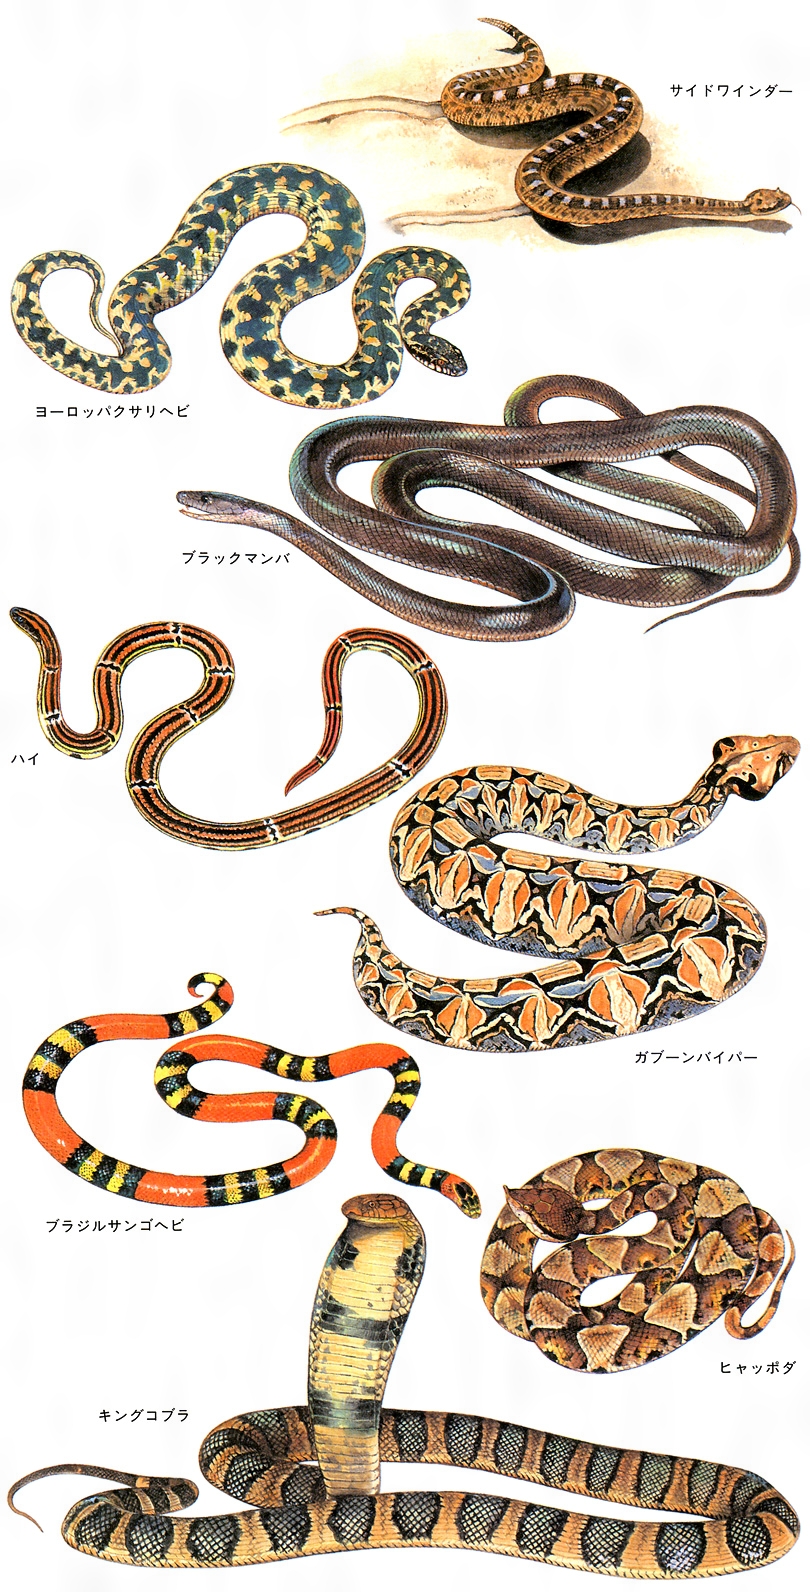 東南アジアヘビ図鑑 - 爬虫類/両生類用品